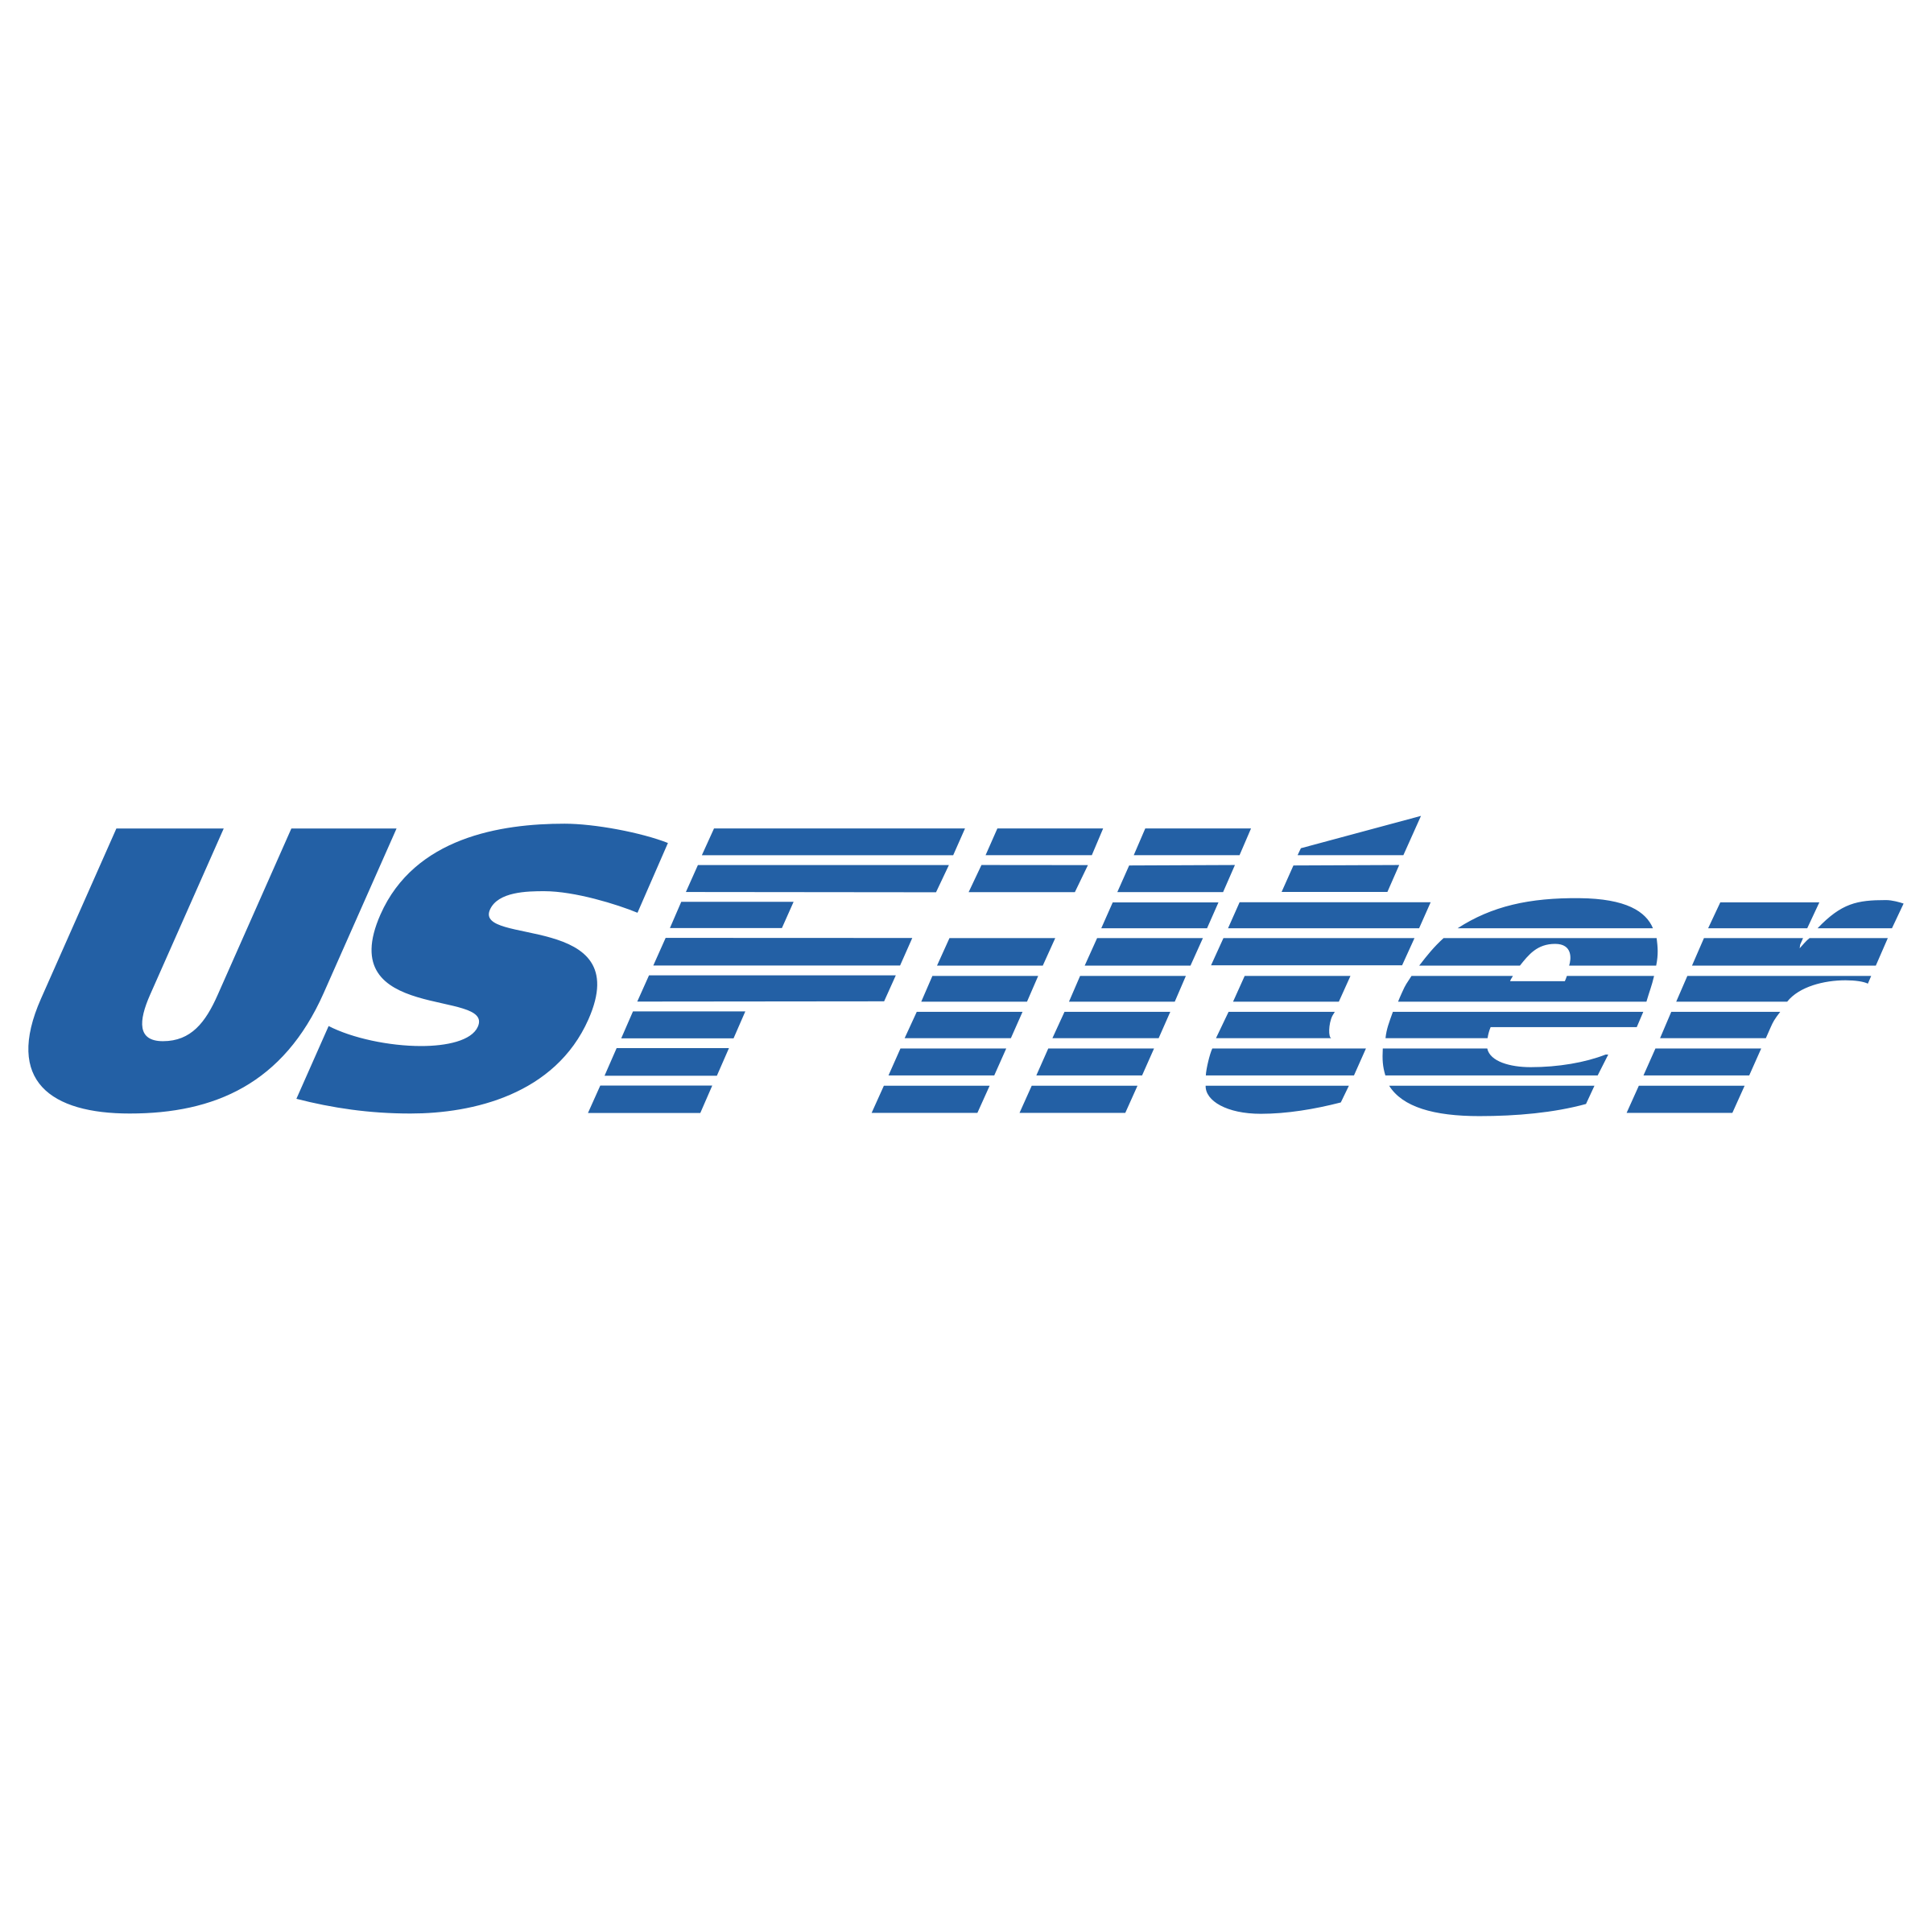 US Filter